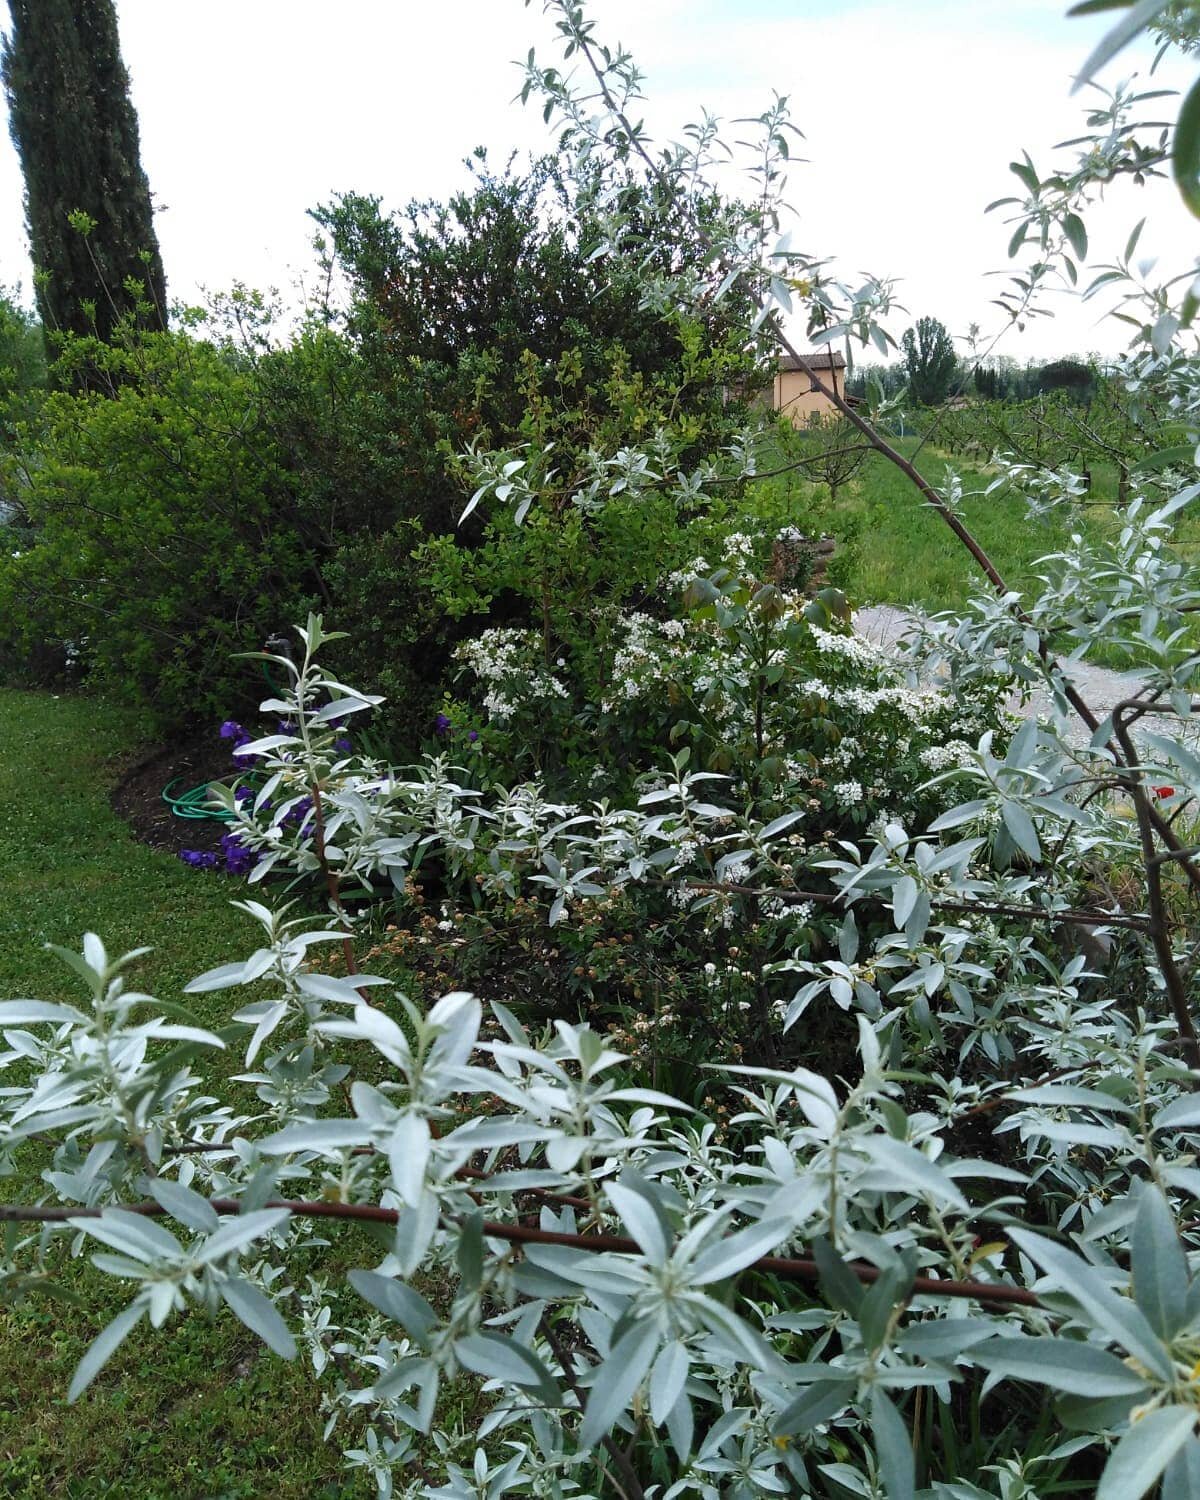 Nella siepe di casa l'Elaeagnus angustifolia 'Quick Silver' &egrave; sempre molto luminoso con il suo bellissimo fogliame argentato.

#elaeagnus #elaeagnusangustifolia #giardino #jardin #garden #lucca #aiuolavivace #instagardeners #instagardenlovers 